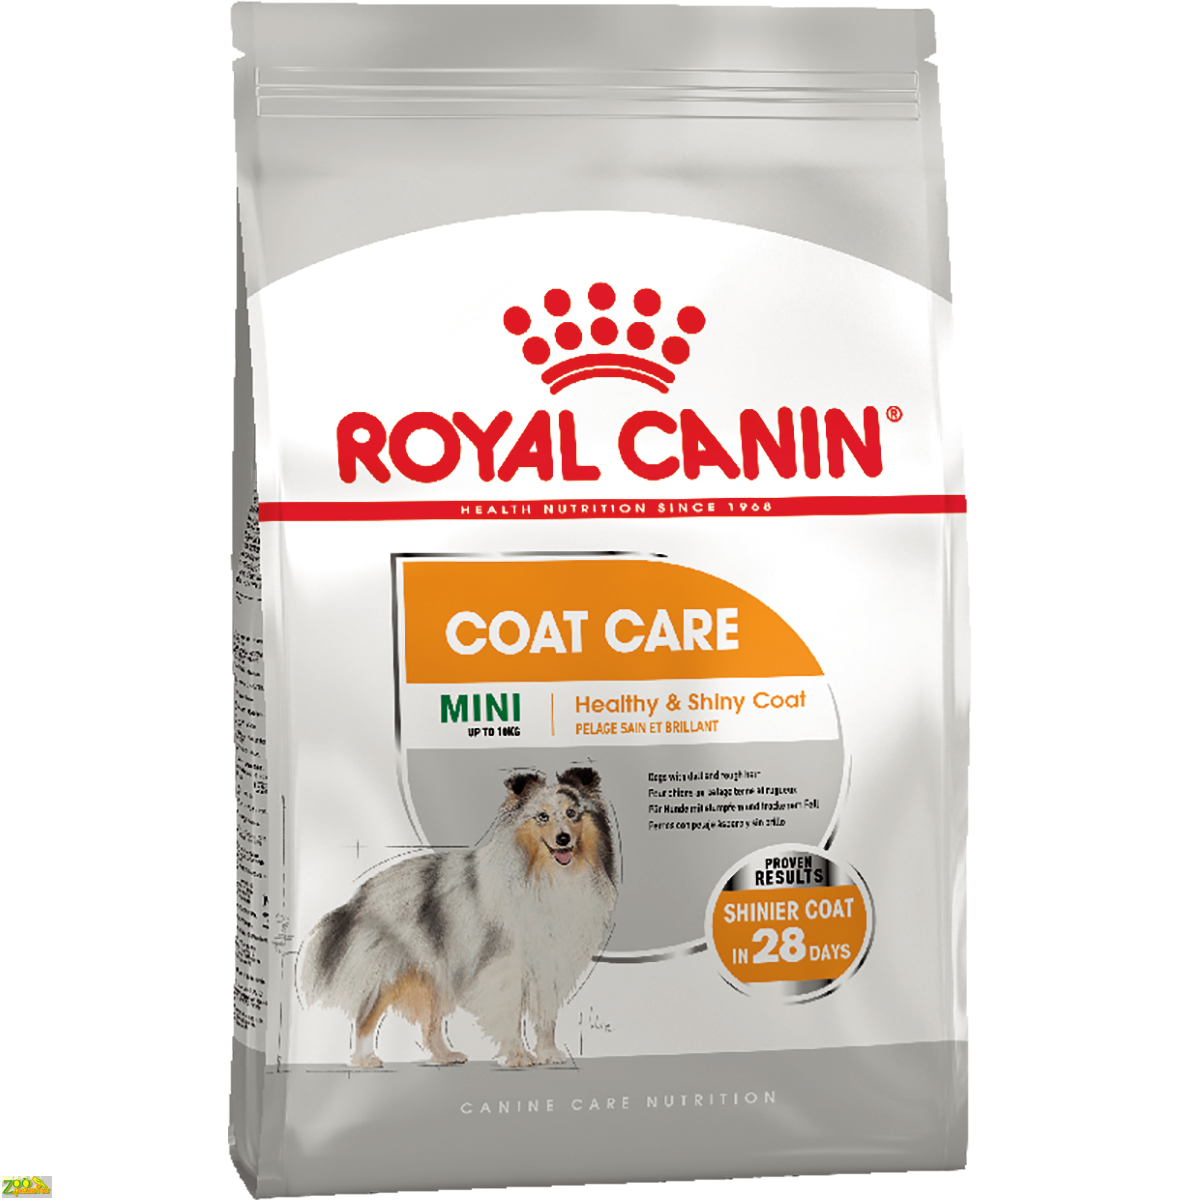 Royal Canin Mini Coat Care 1 кг для собак мини пород 